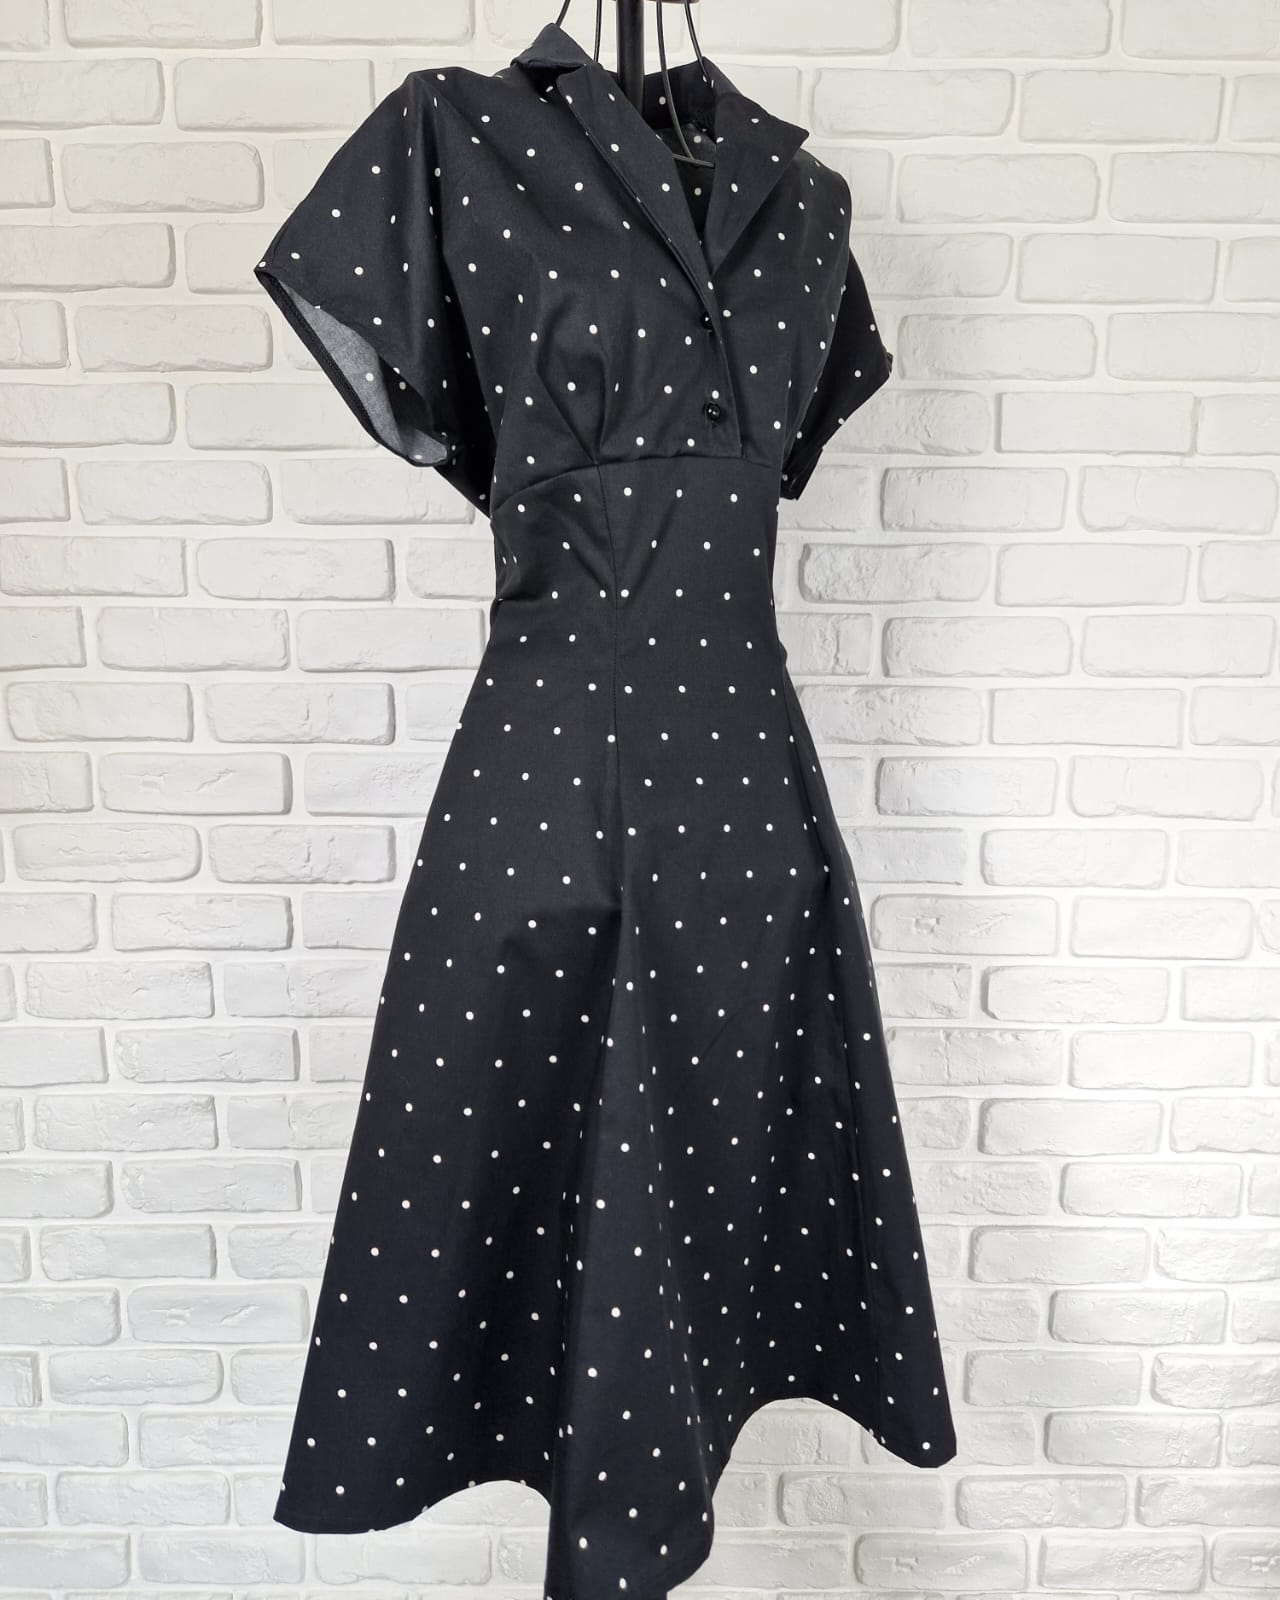 Betty - Black pois retrò l.h. dress - Vestito anni 50 - Natural fabric